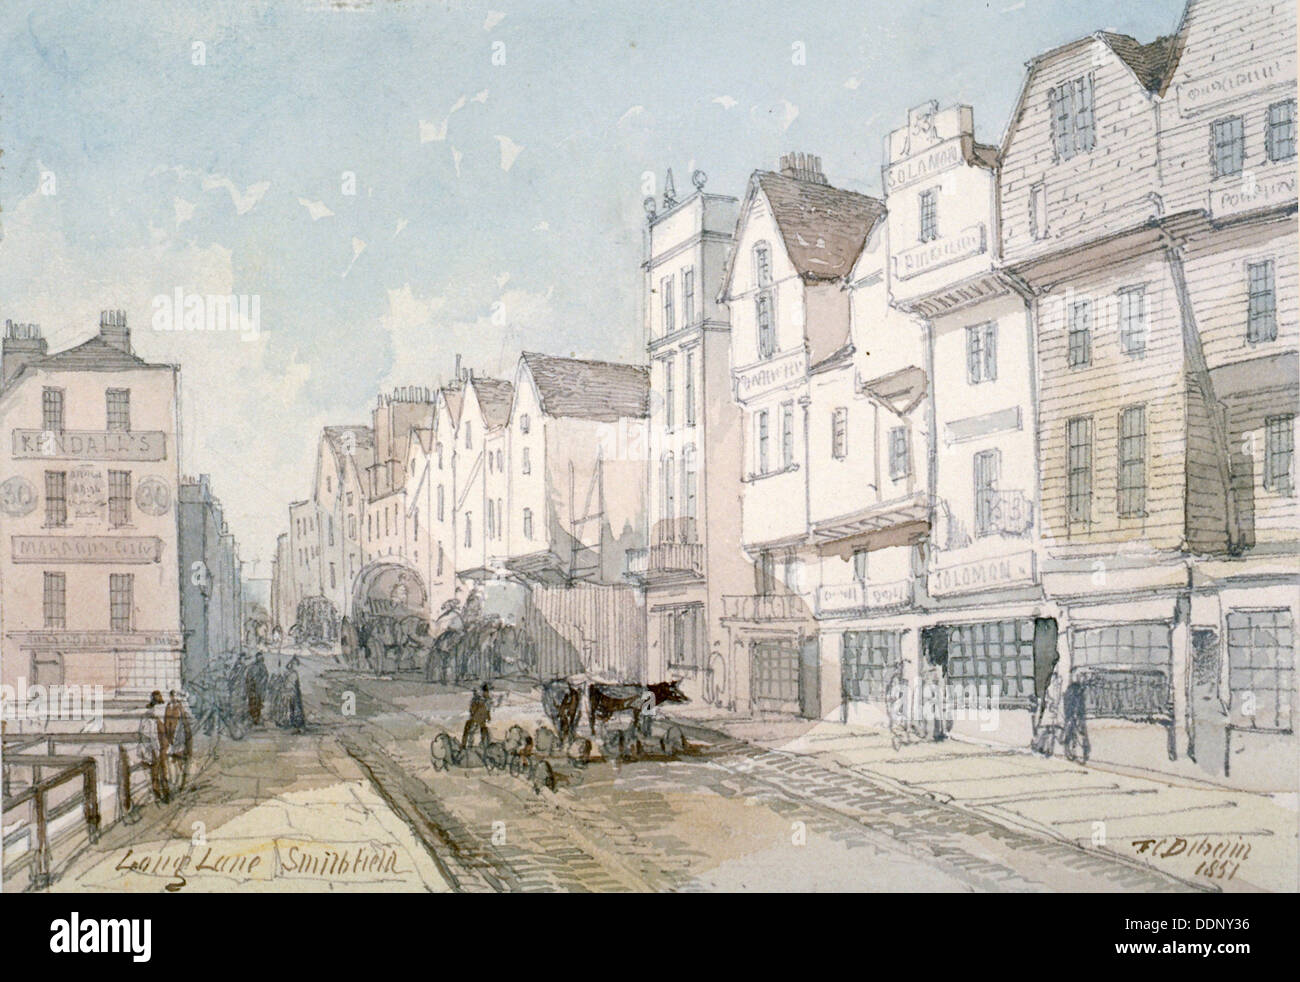 Long Lane, Città di Londra, 1851. Artista: Thomas Colman Dibdin Foto Stock